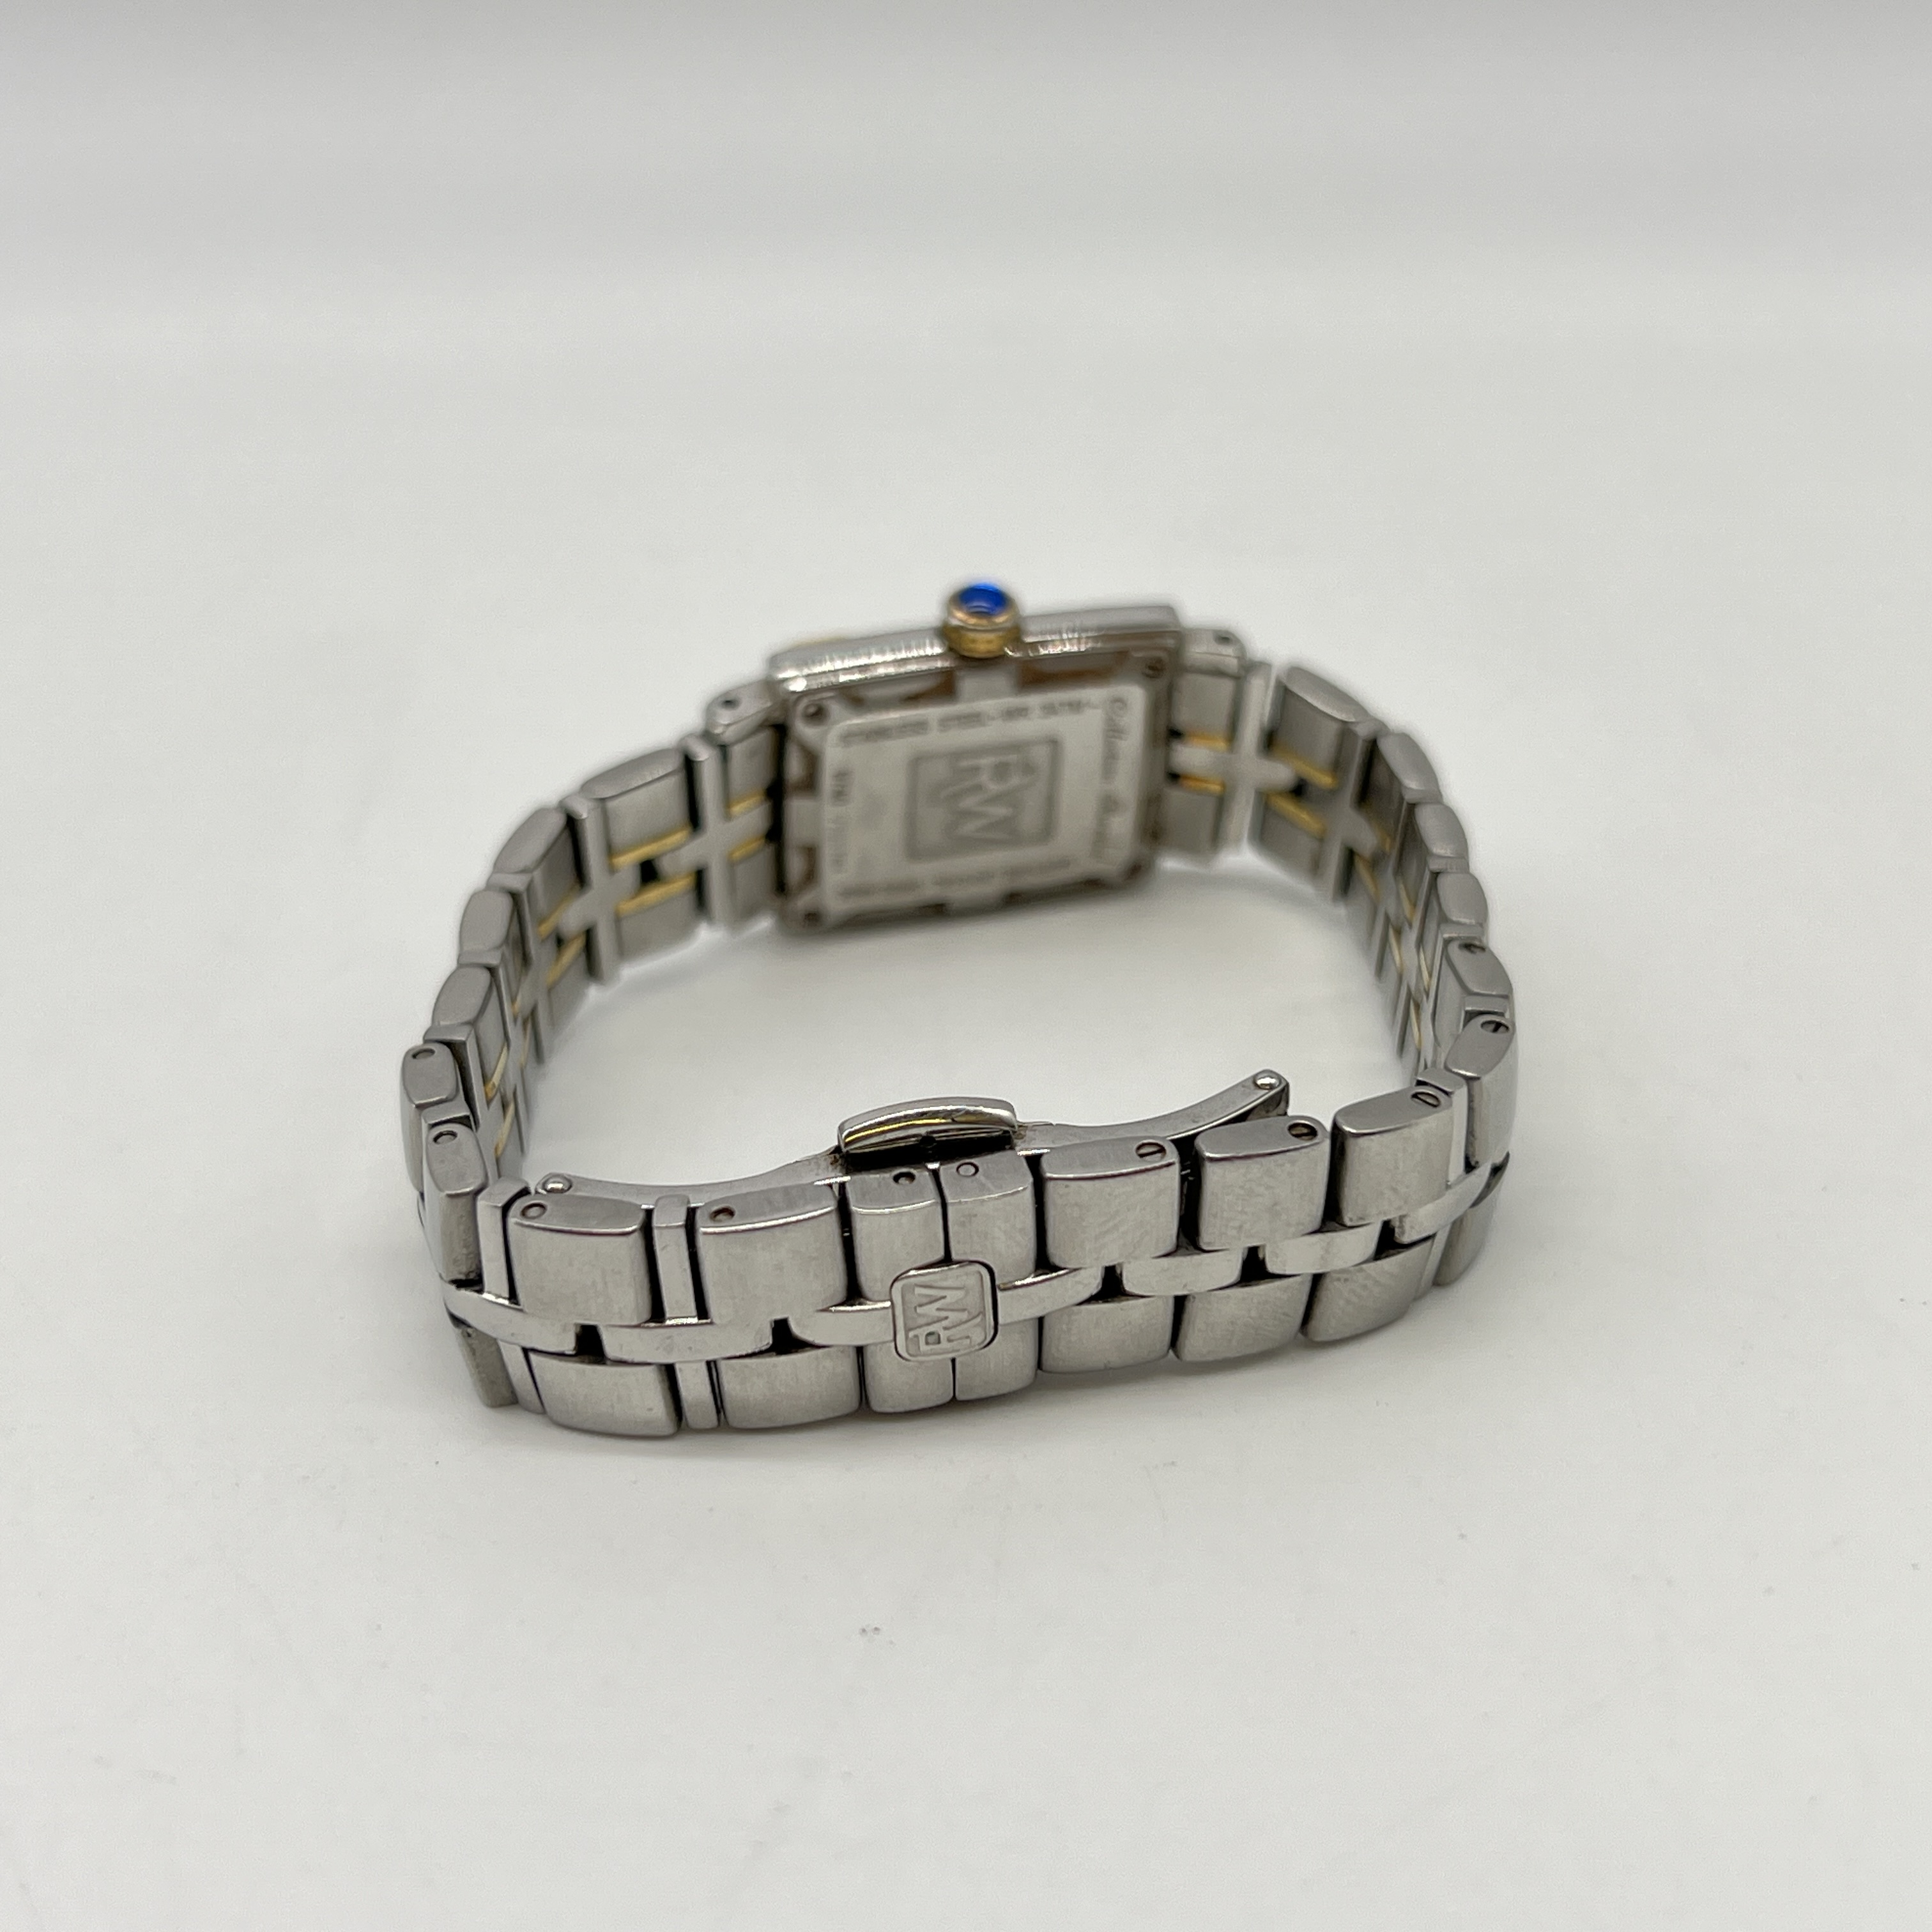 A Raymond Weil diamond set watch - Image 6 of 7